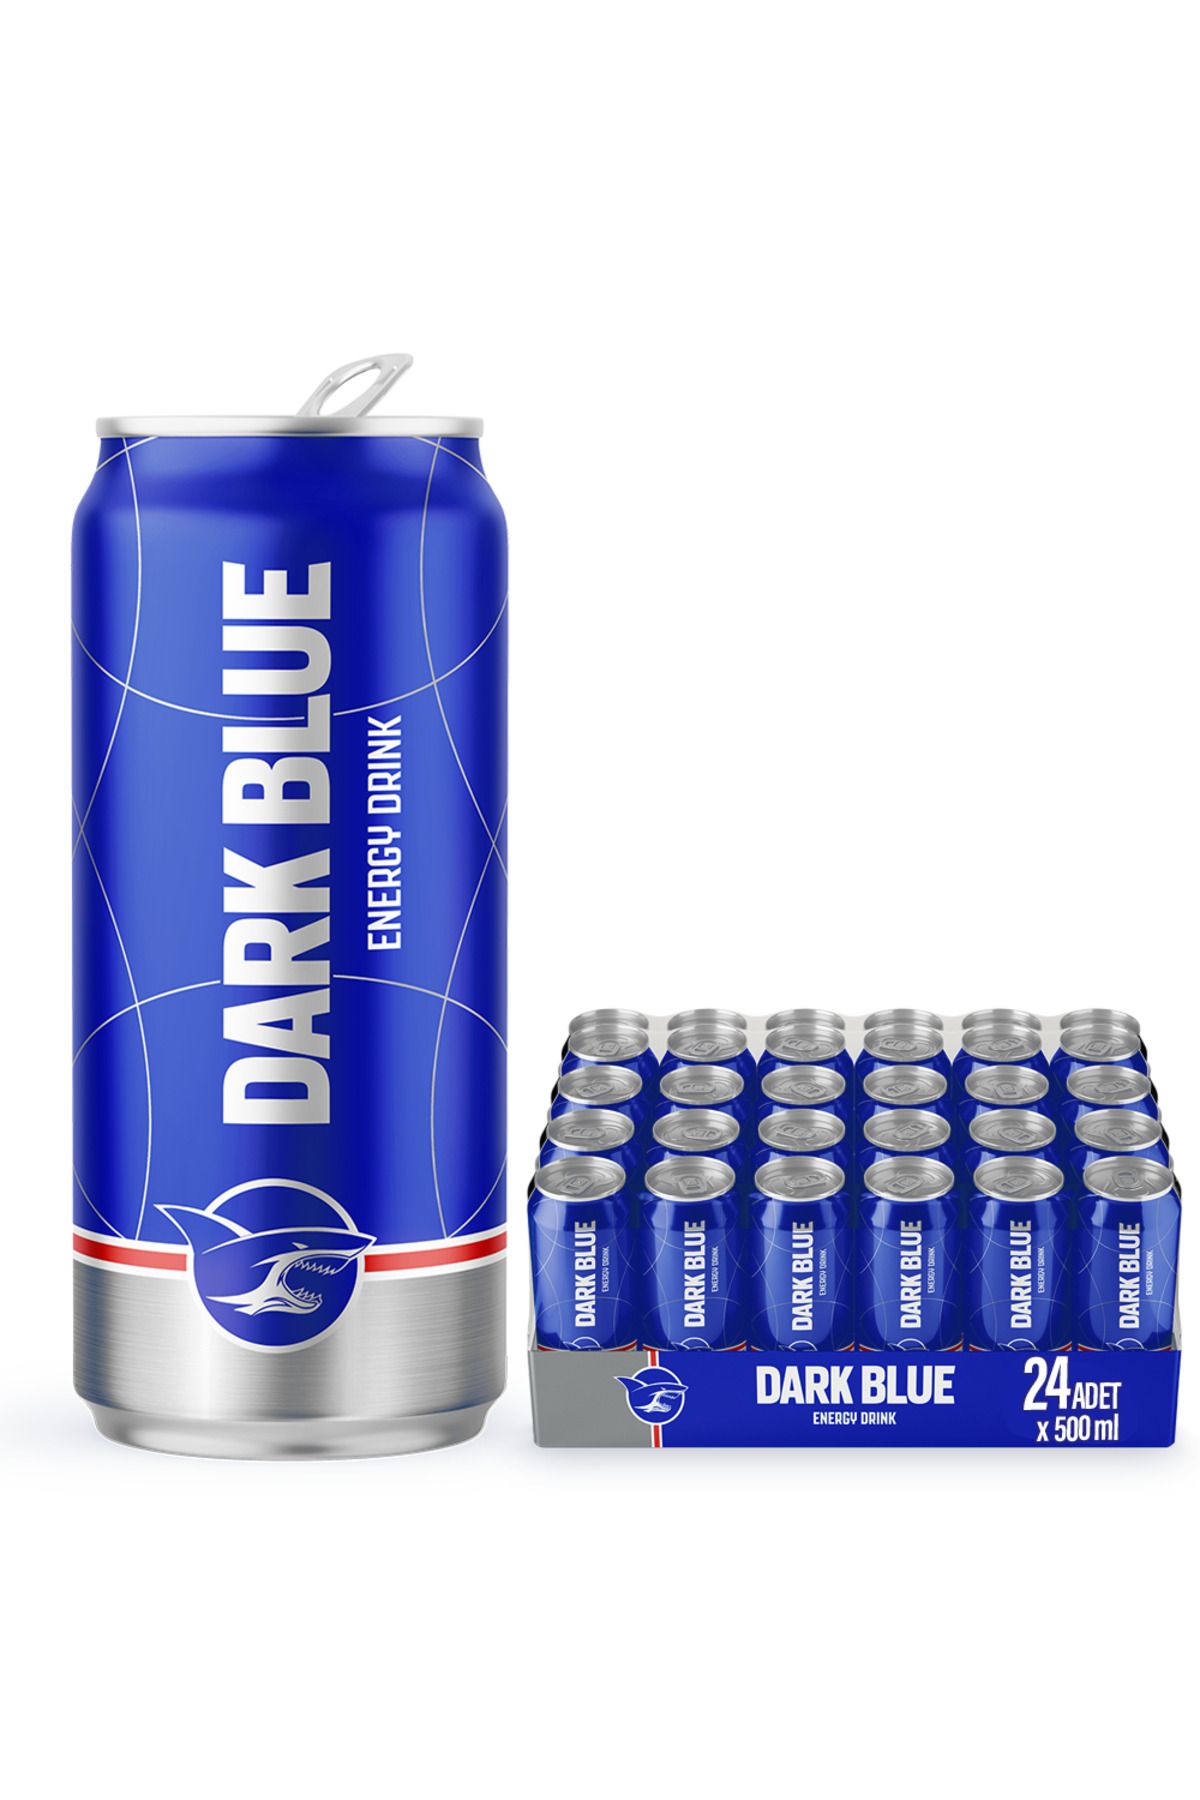 Dark blue Enerji Içeceği, 500 ml (24'LÜ PAKET, 24 ADET X 500 ML)